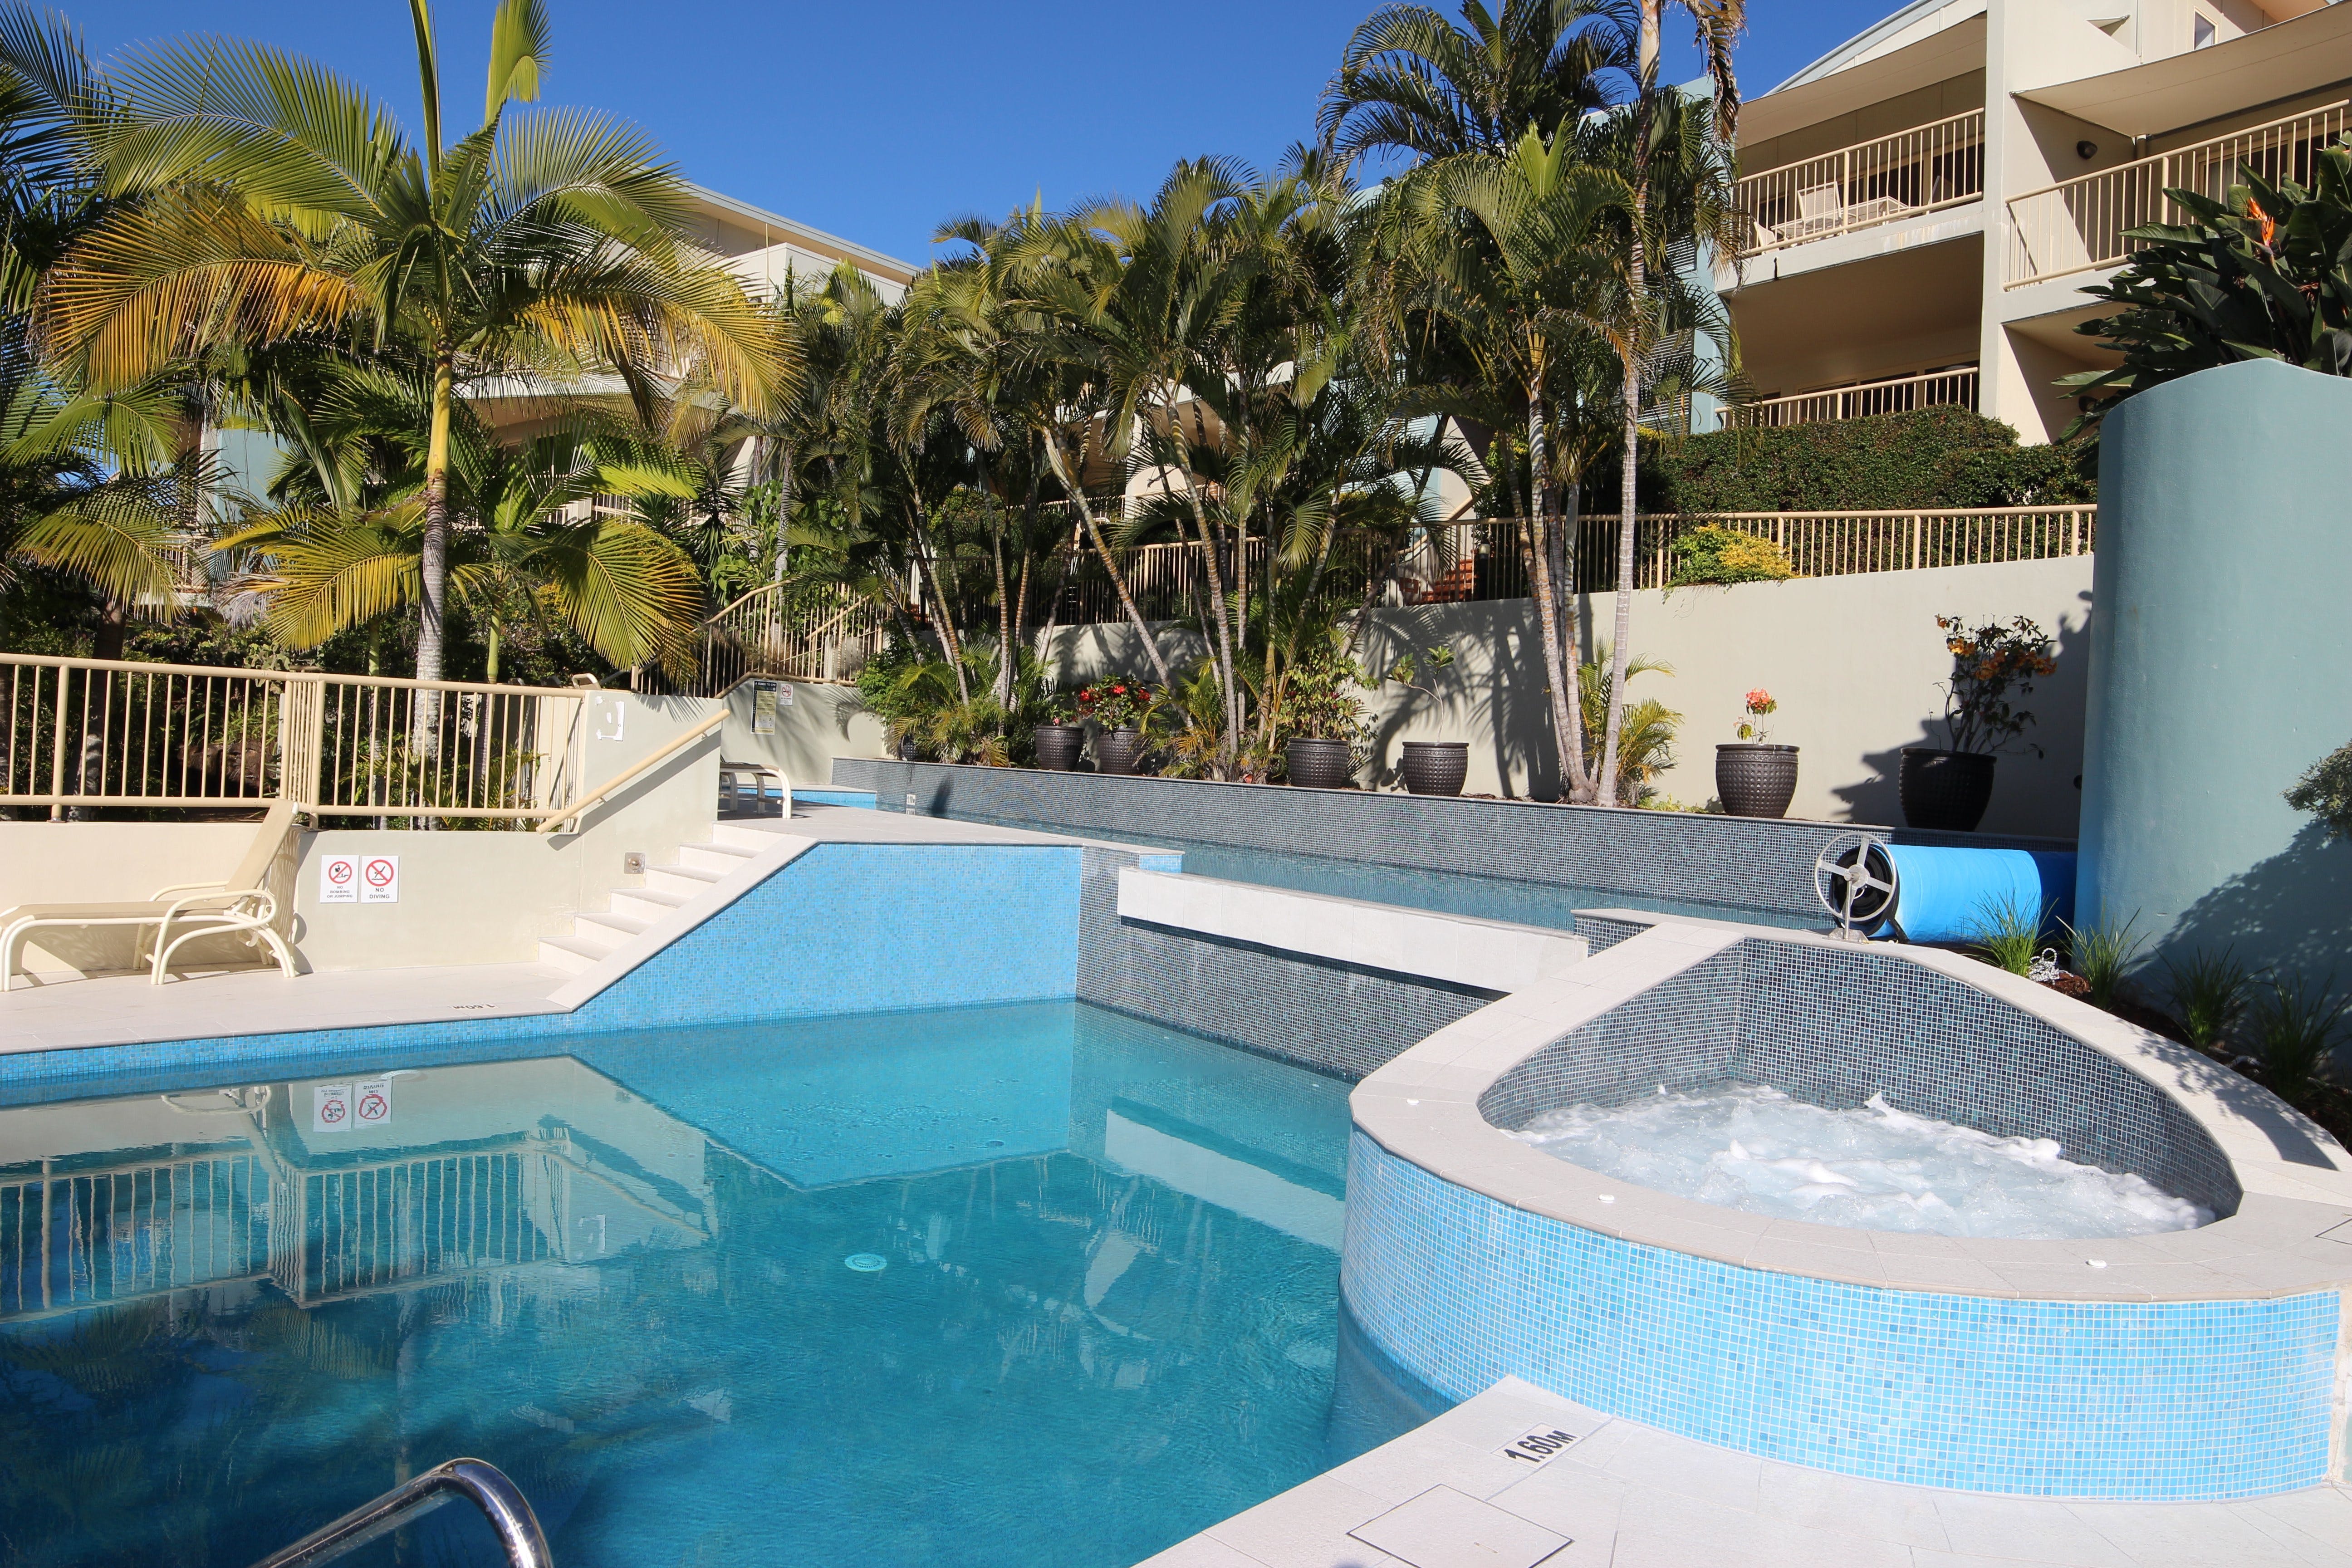 Lennox Beach Resort - Accommodation in Bendigo